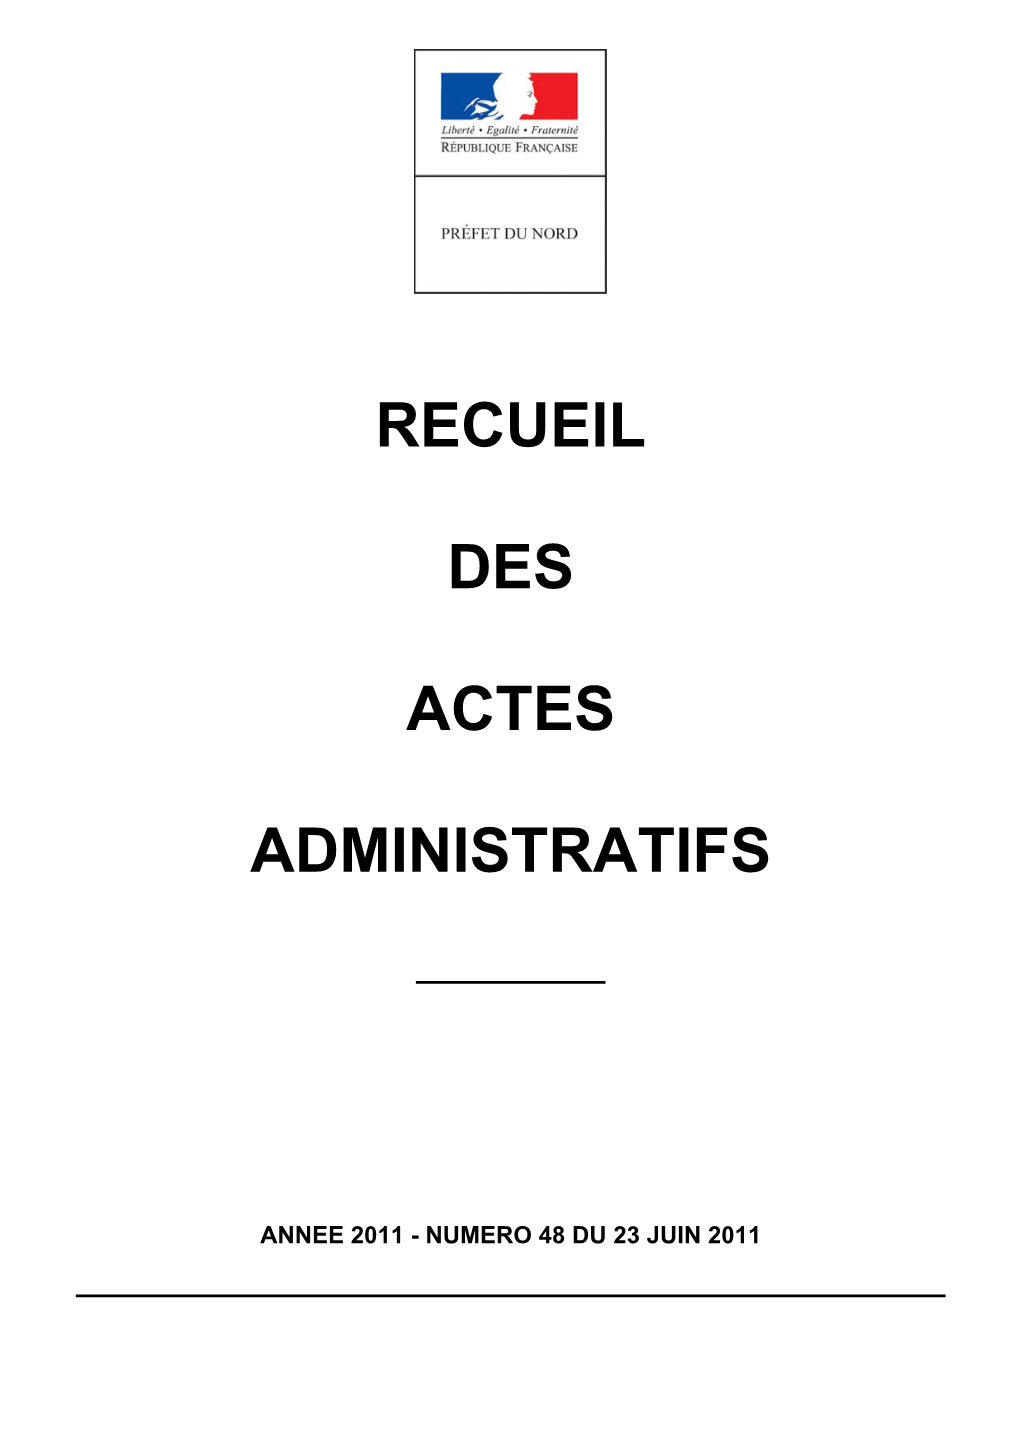 Recueil Des Actes Administratifs De La Préfecture Du Nord Année 2011 - N° 48